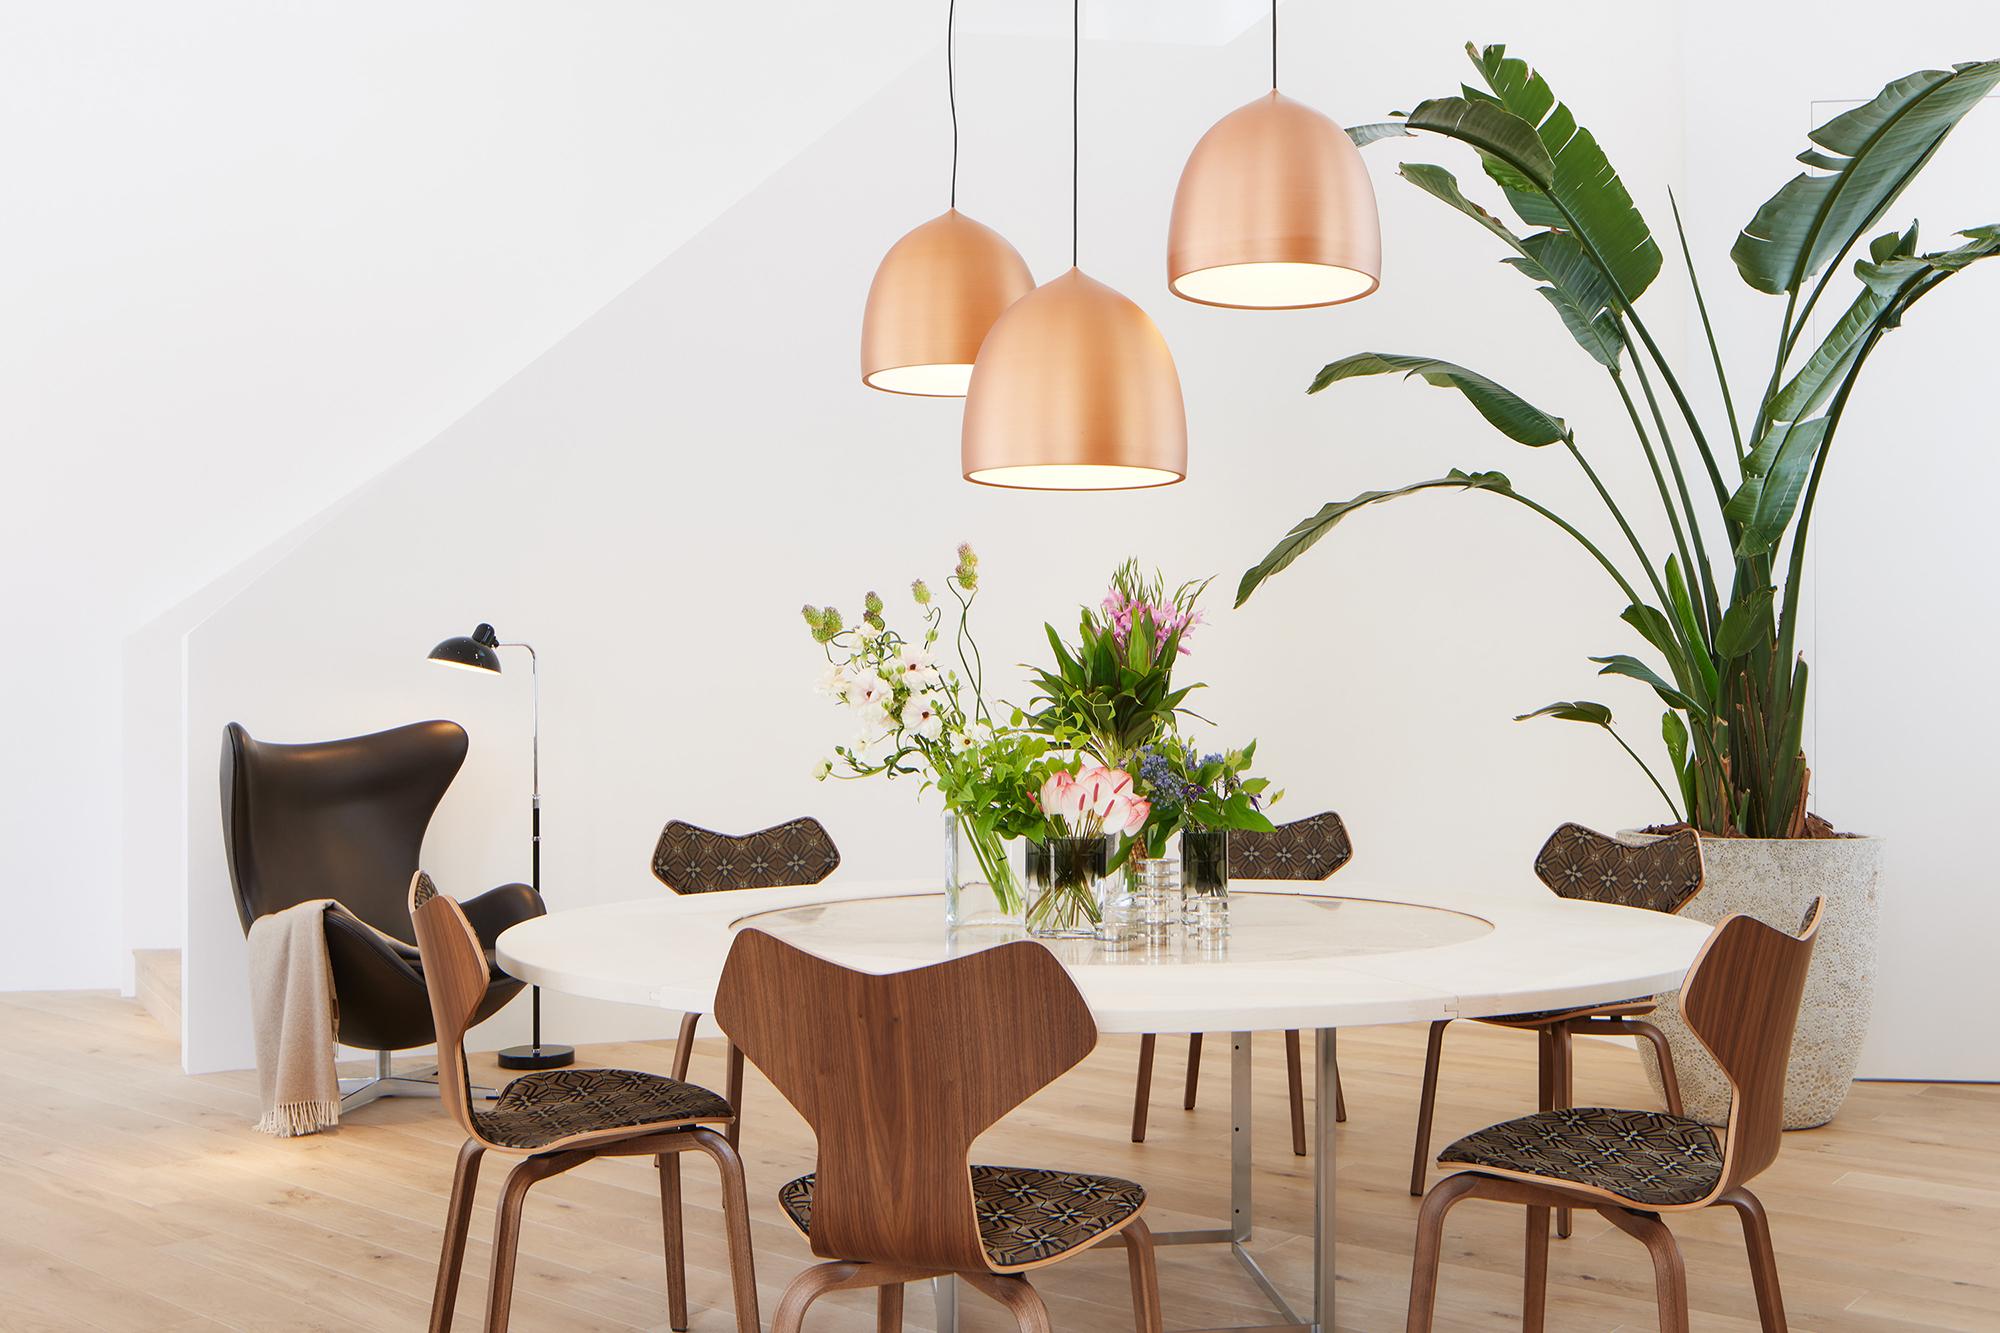 Arne Jacobsen 'Grand Prix' Stuhl für Fritz Hansen in Partial Fabric Polsterung.
 
Fritz Hansen wurde 1872 gegründet und ist zum Synonym für legendäres dänisches Design geworden. Die Marke kombiniert zeitlose Handwerkskunst mit einem Schwerpunkt auf